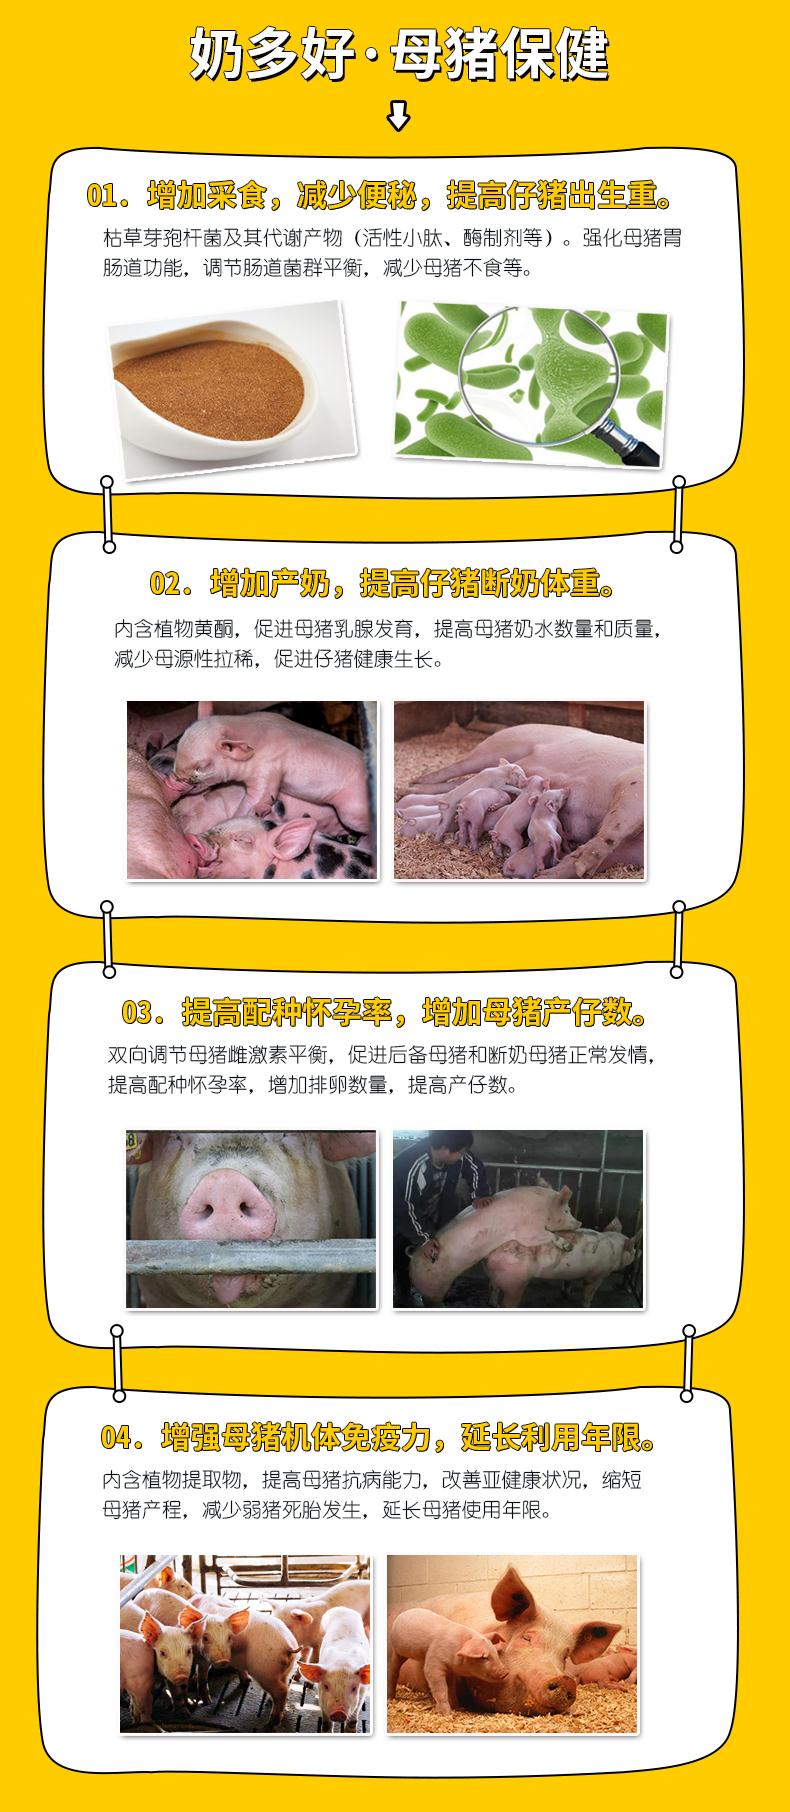 母猪保健调理母猪的亚健康状态